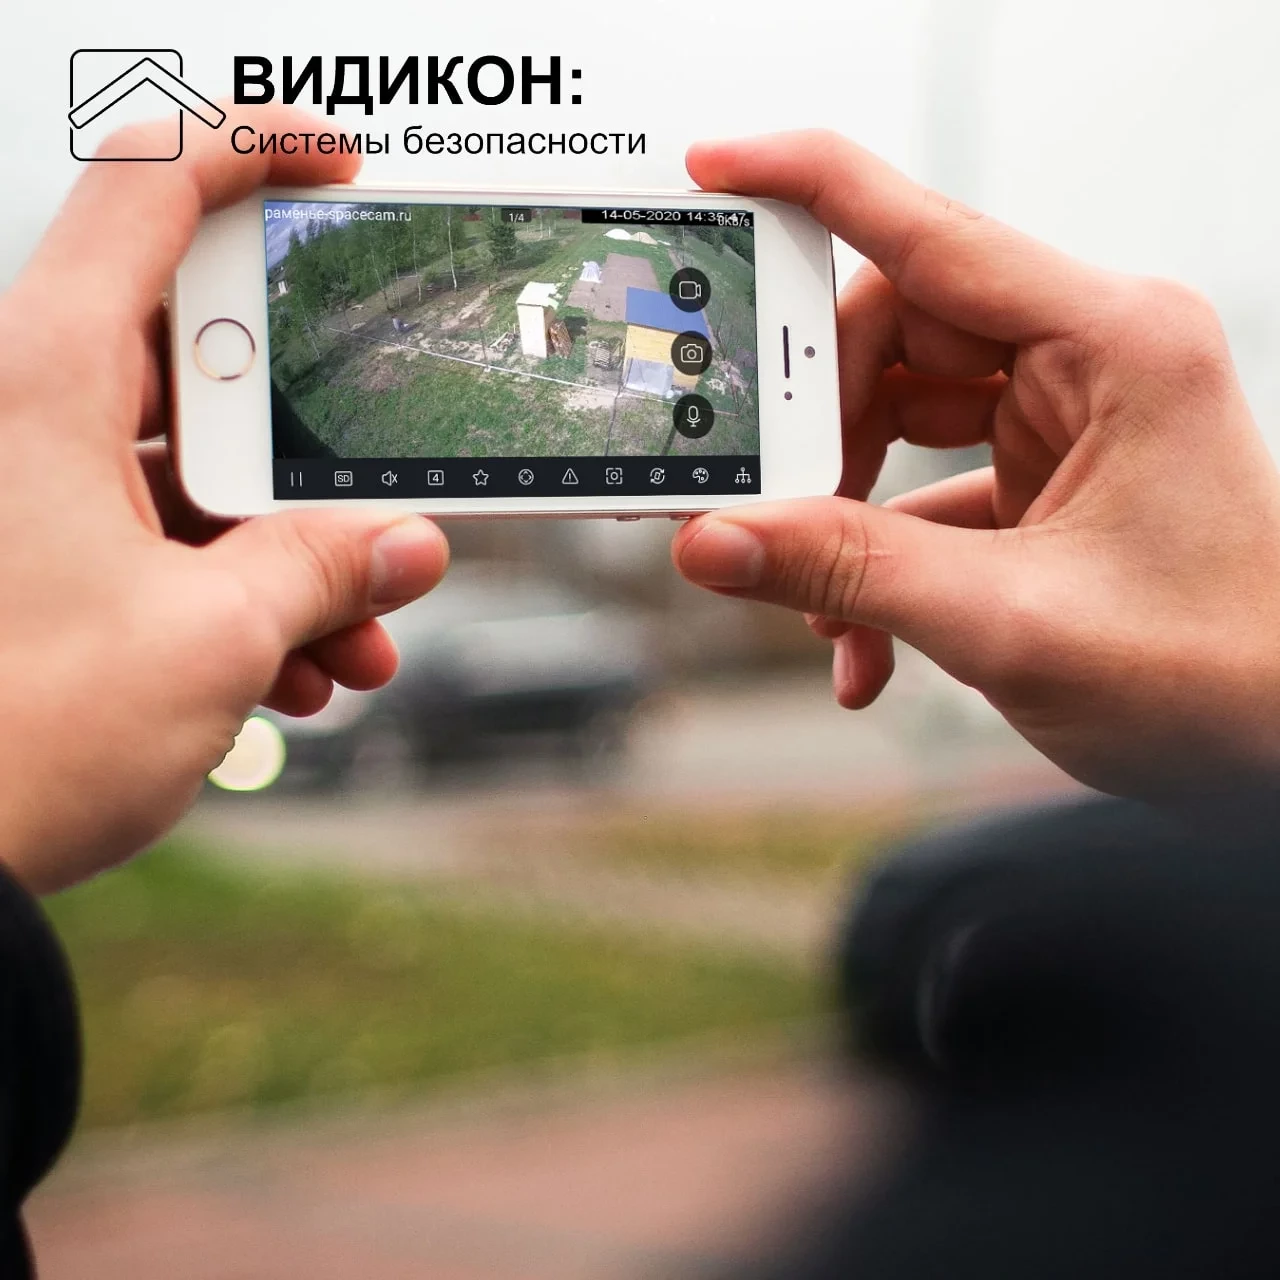 Беспроводная камера видеонаблюдения, камеры ночного видеонаблюдения, wifi видеонаблюдение во Владимире